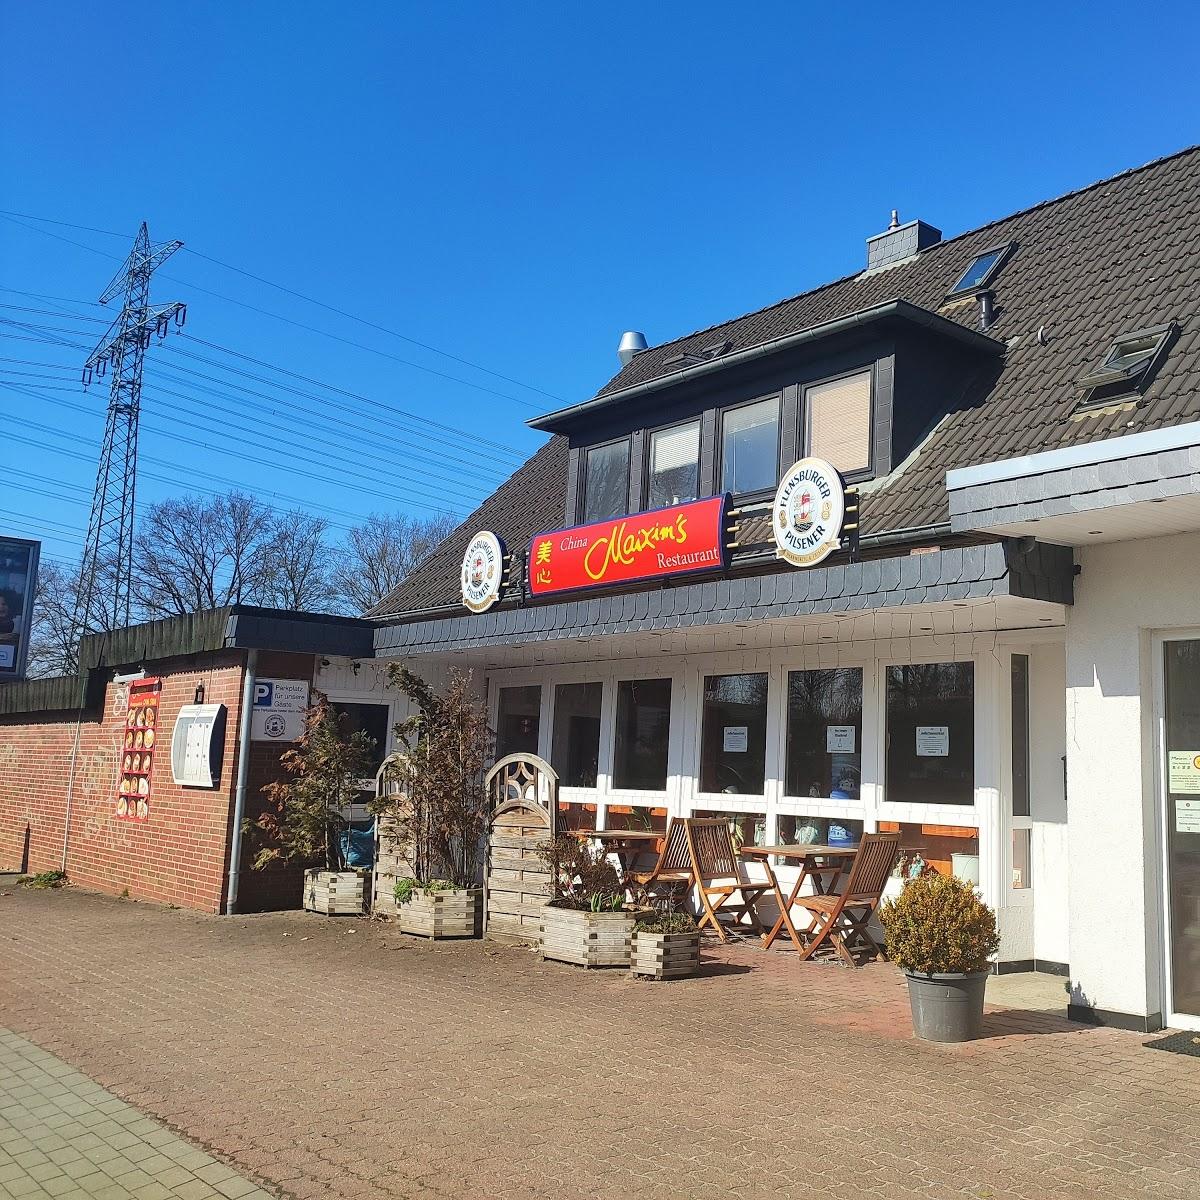 Restaurant "China-Restaurant Maixim’s" in  Norderstedt